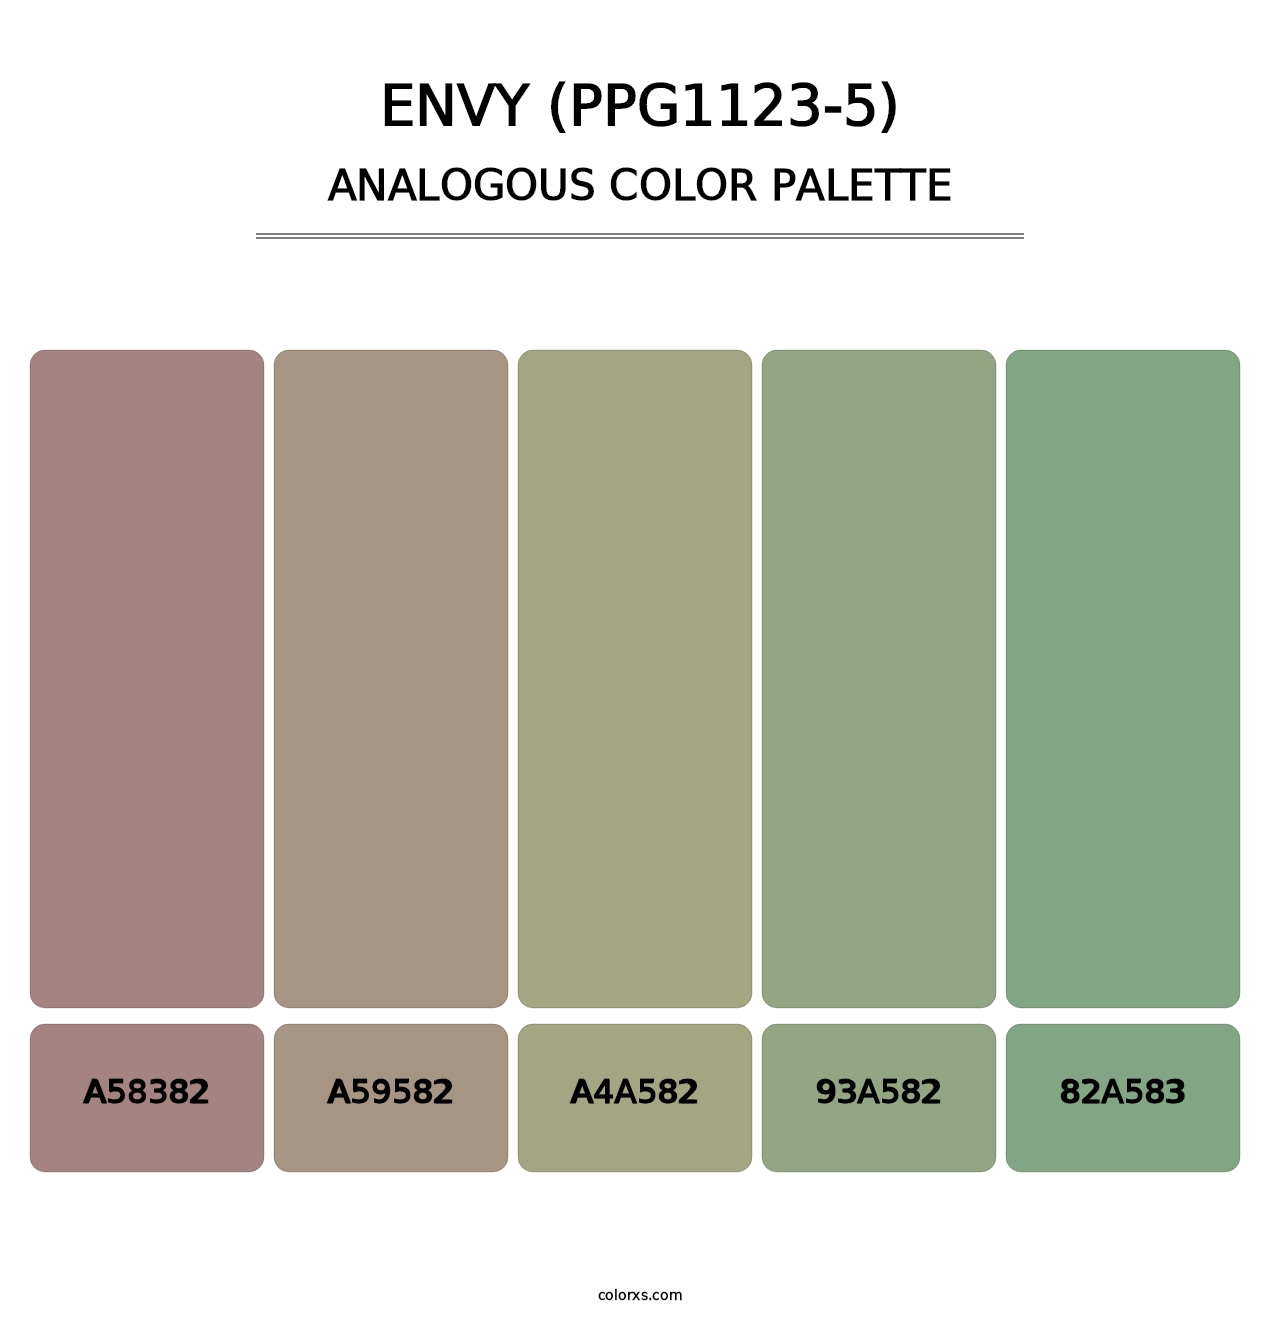 Envy (PPG1123-5) - Analogous Color Palette